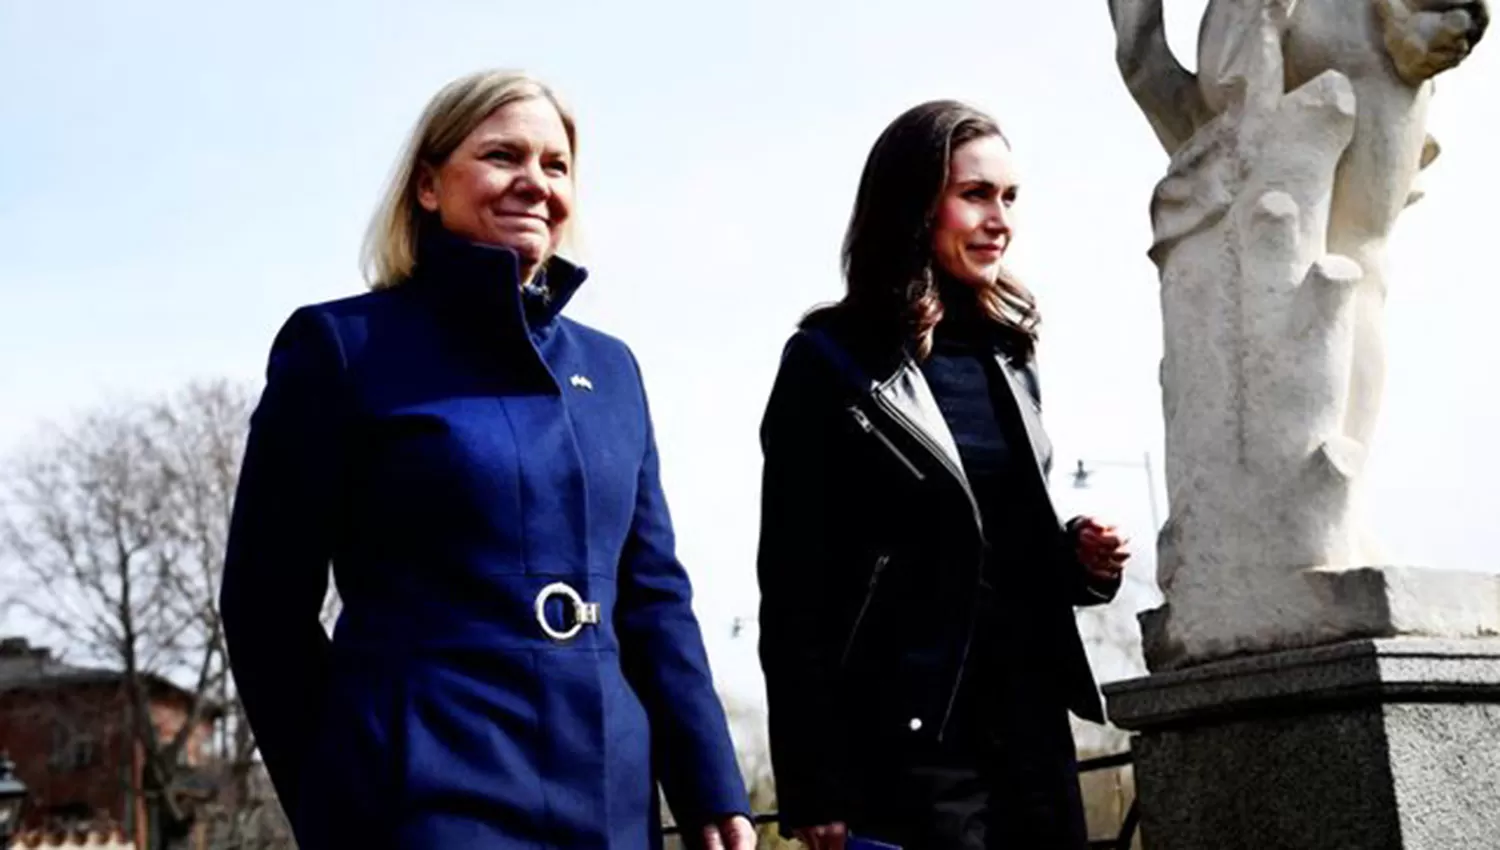 EN ESTOCOLMO. La Primera Ministra sueca, Magdalena Andersson, recibió esta semana a su par finlandesa, Sanna Marin, para discutir los pasos a seguir tras la invasión rusa a Ucrania.